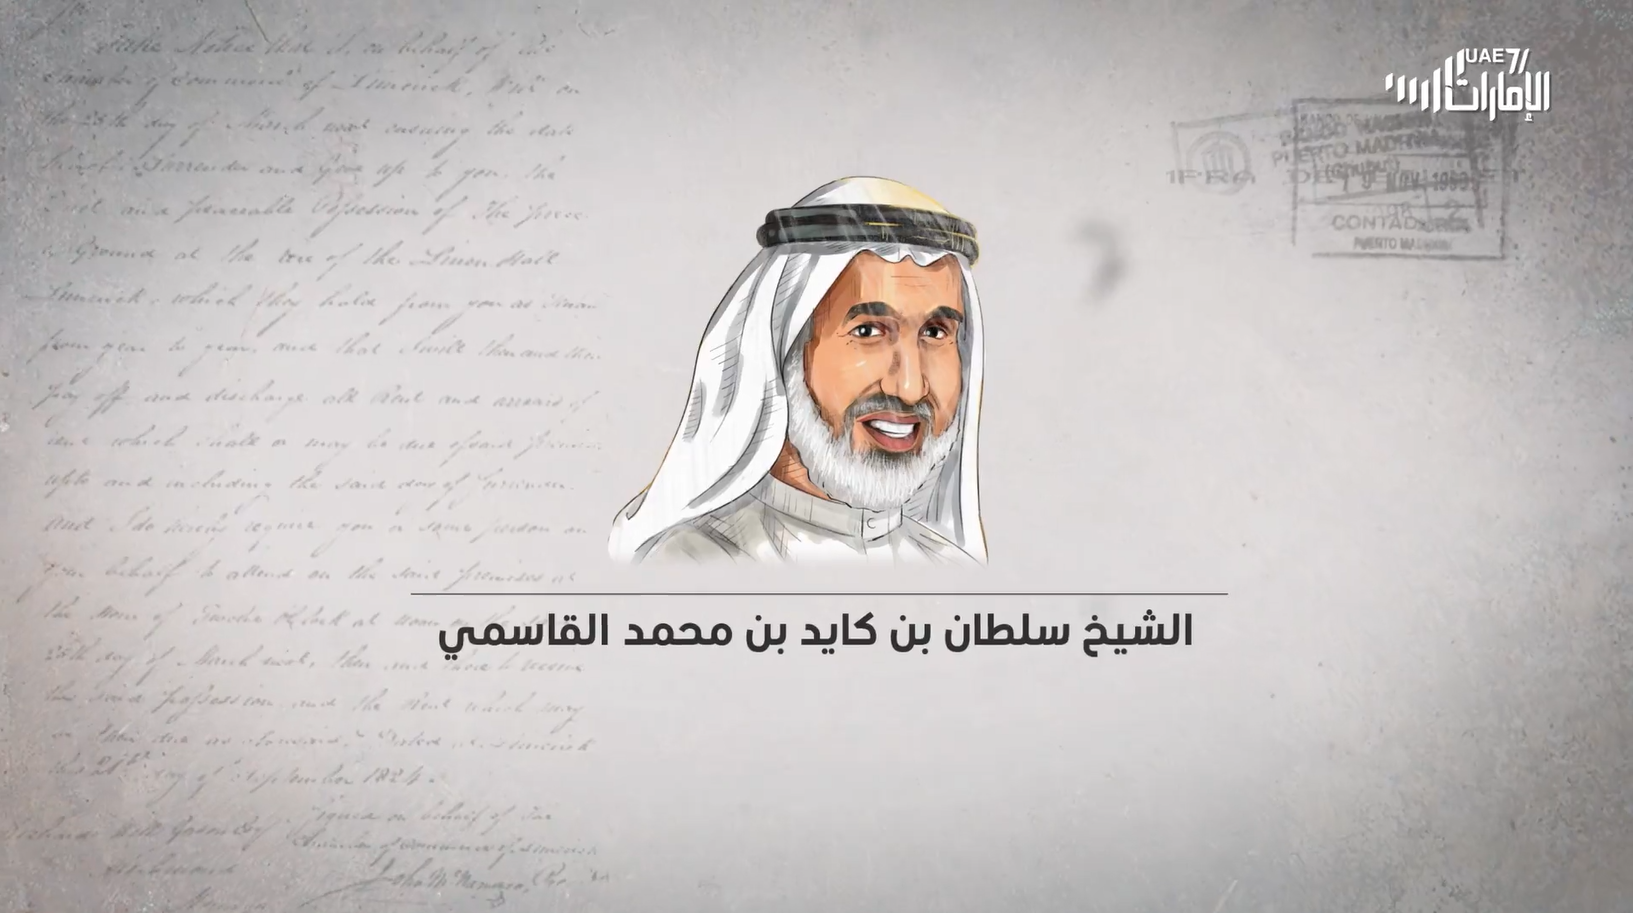 المعتقل الشيخ سلطان بن كايد القاسمي .. يتحدث عن مسيرته من القصر إلى السجن